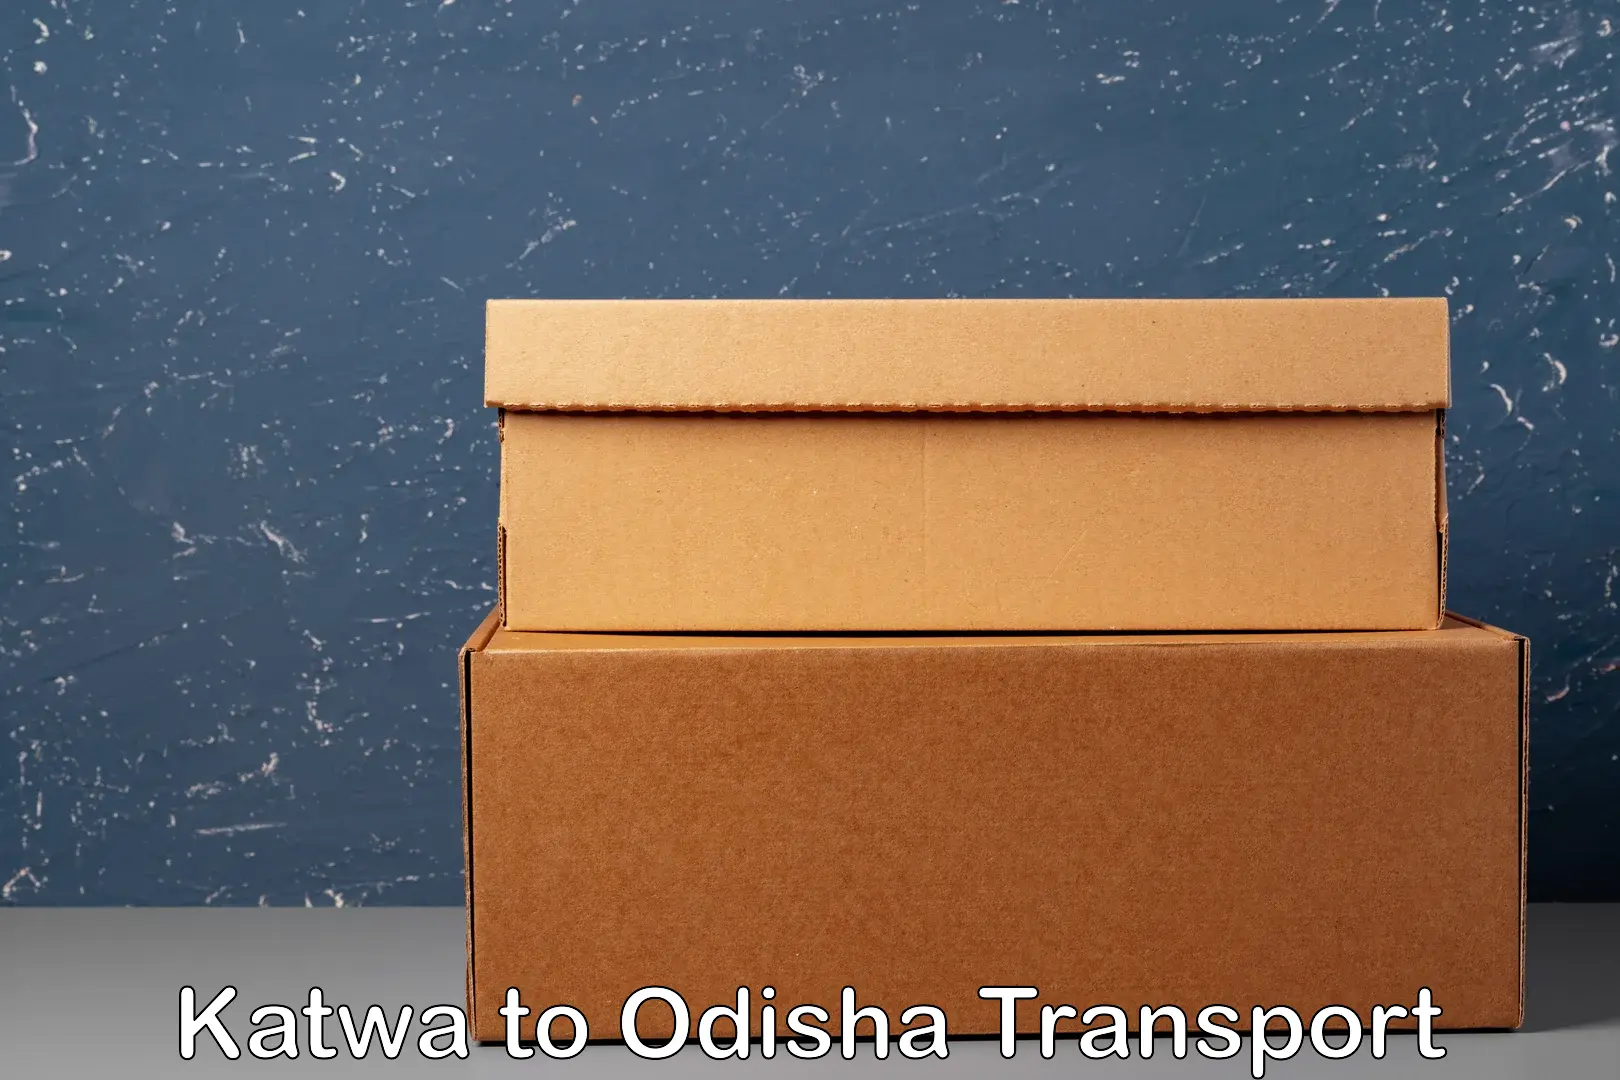 Goods transport services Katwa to Ukhunda